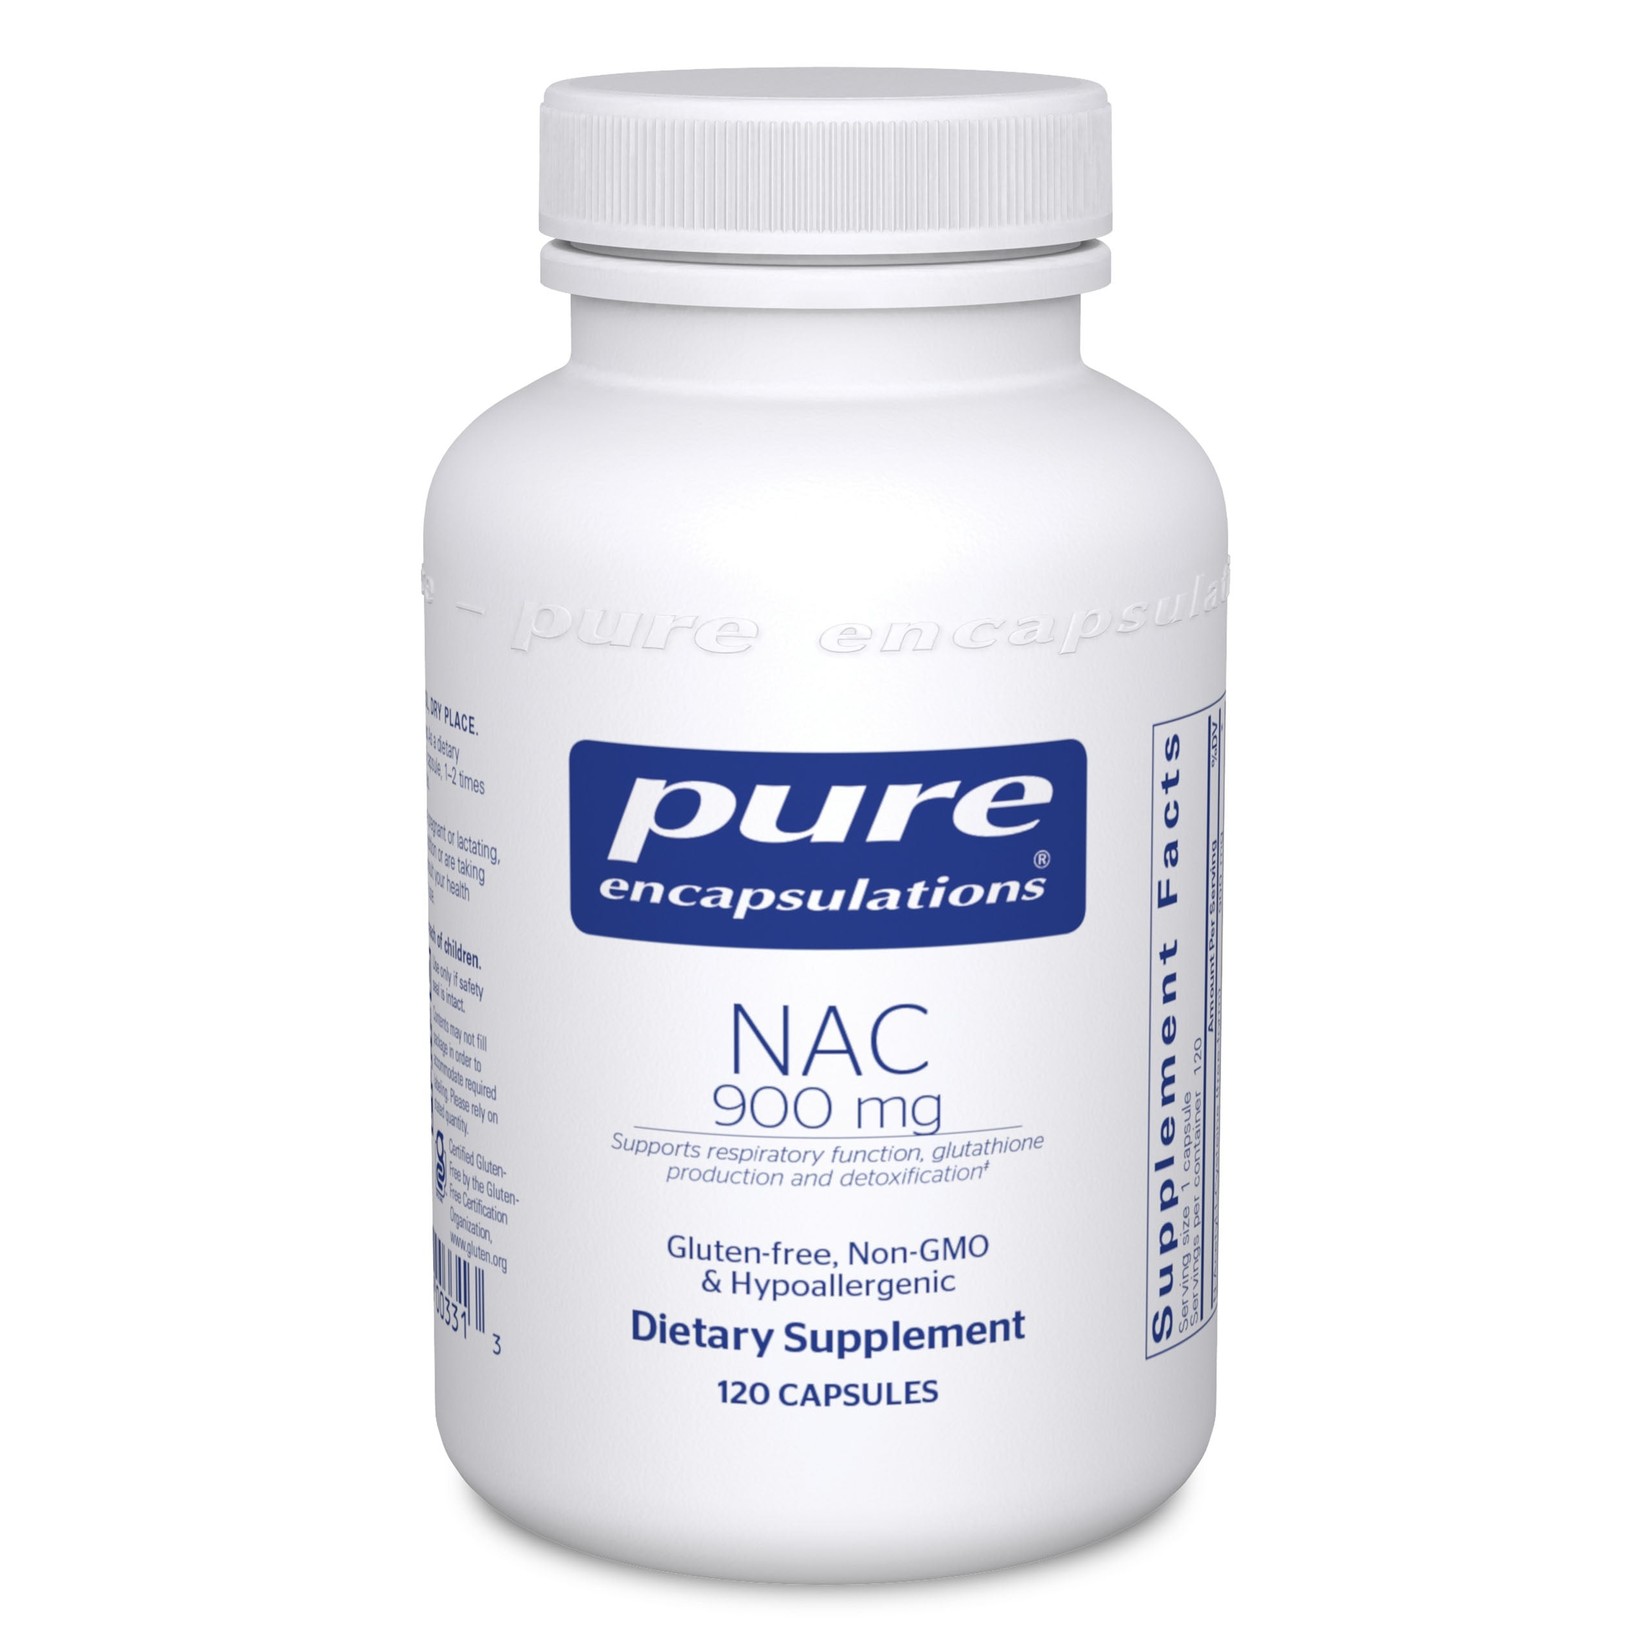 Pure Encapsulations Pure Encapsulations - Nac 900 mg - 120 Capsules